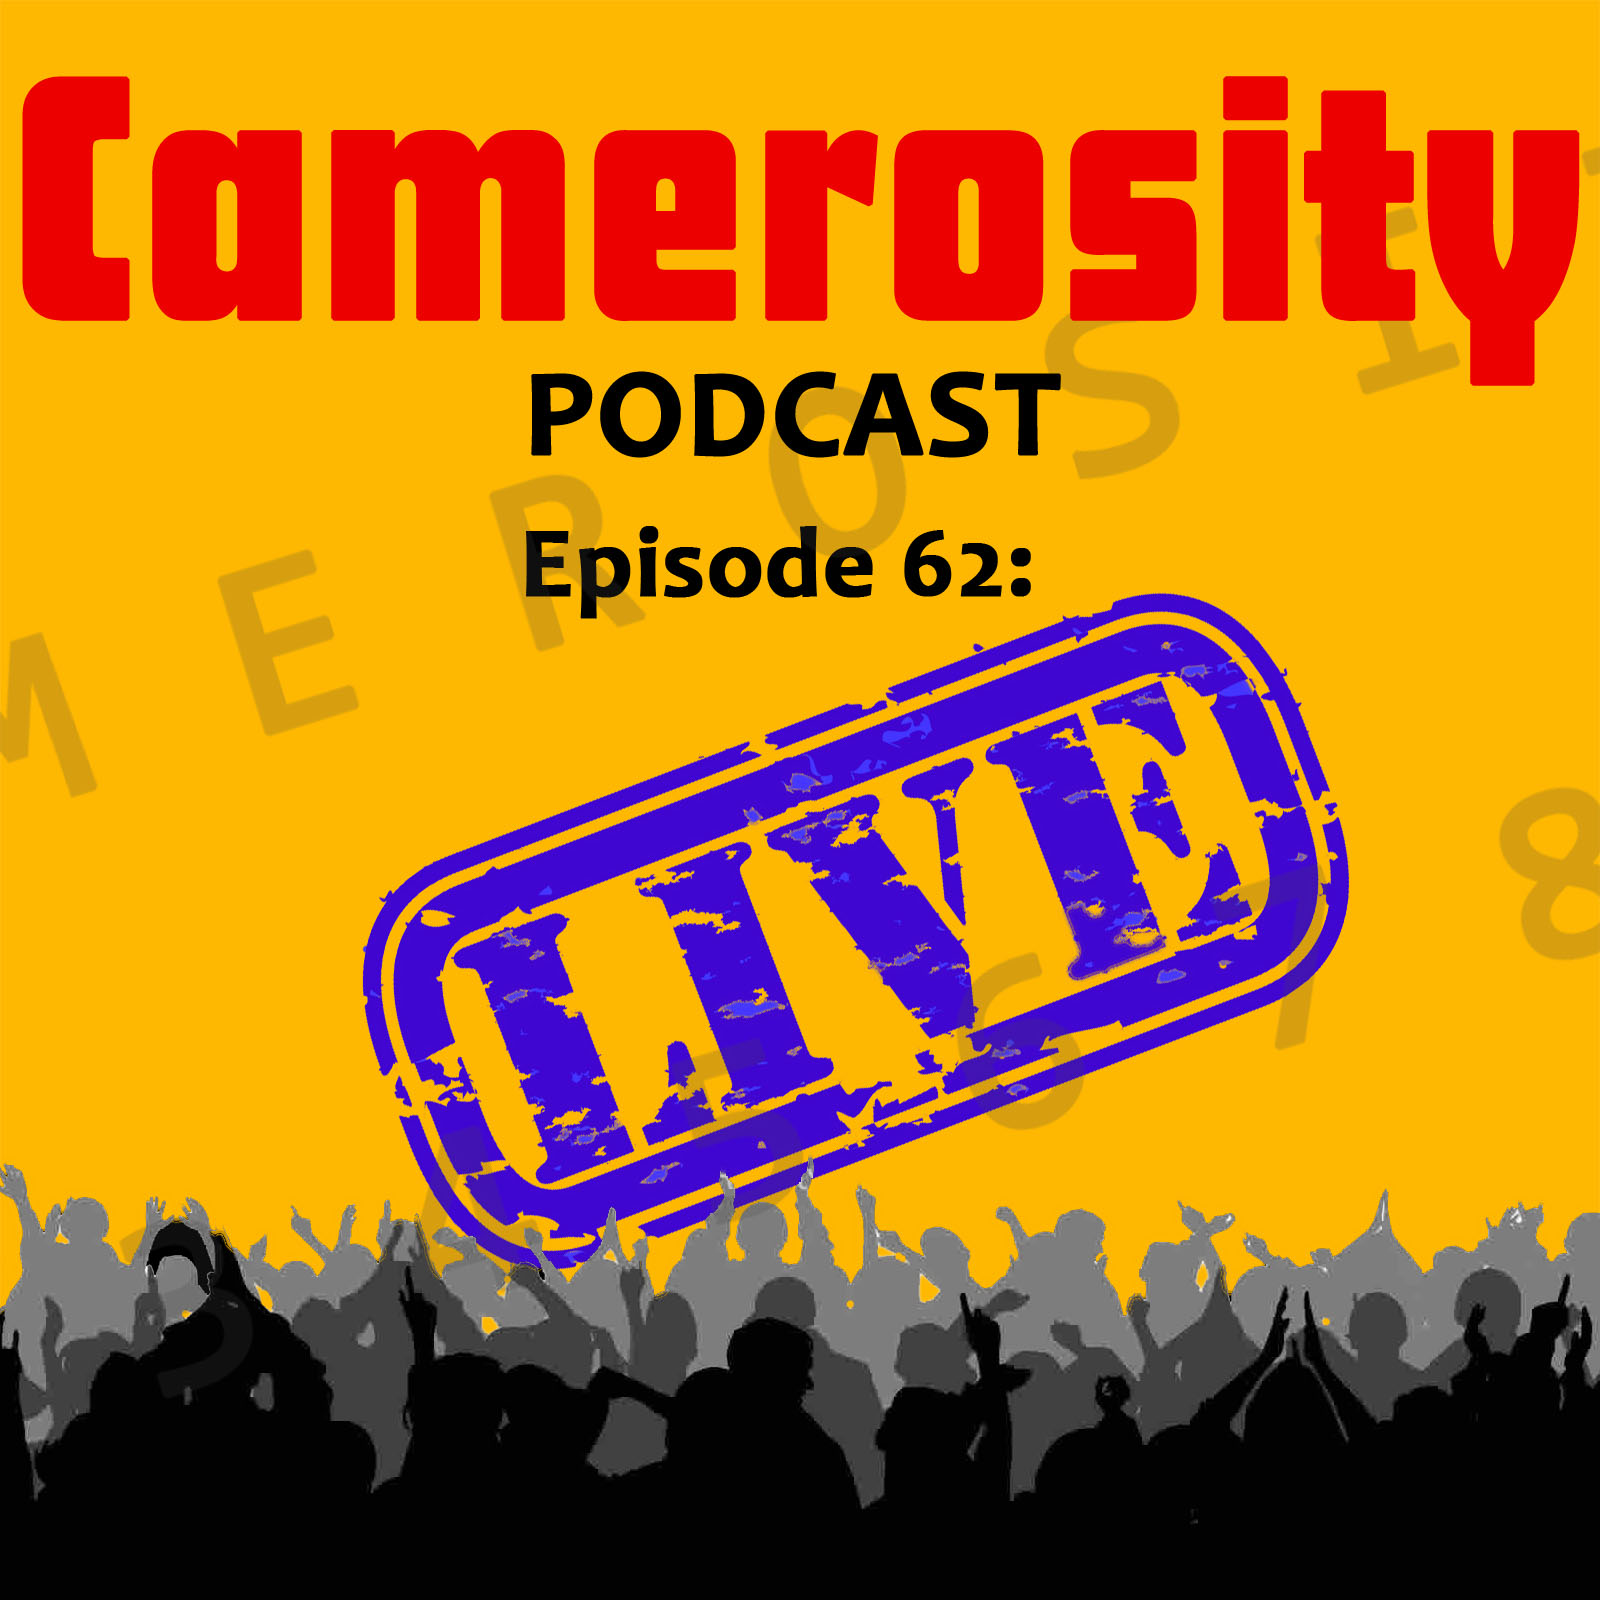 Episode 62: Camerosity Live!